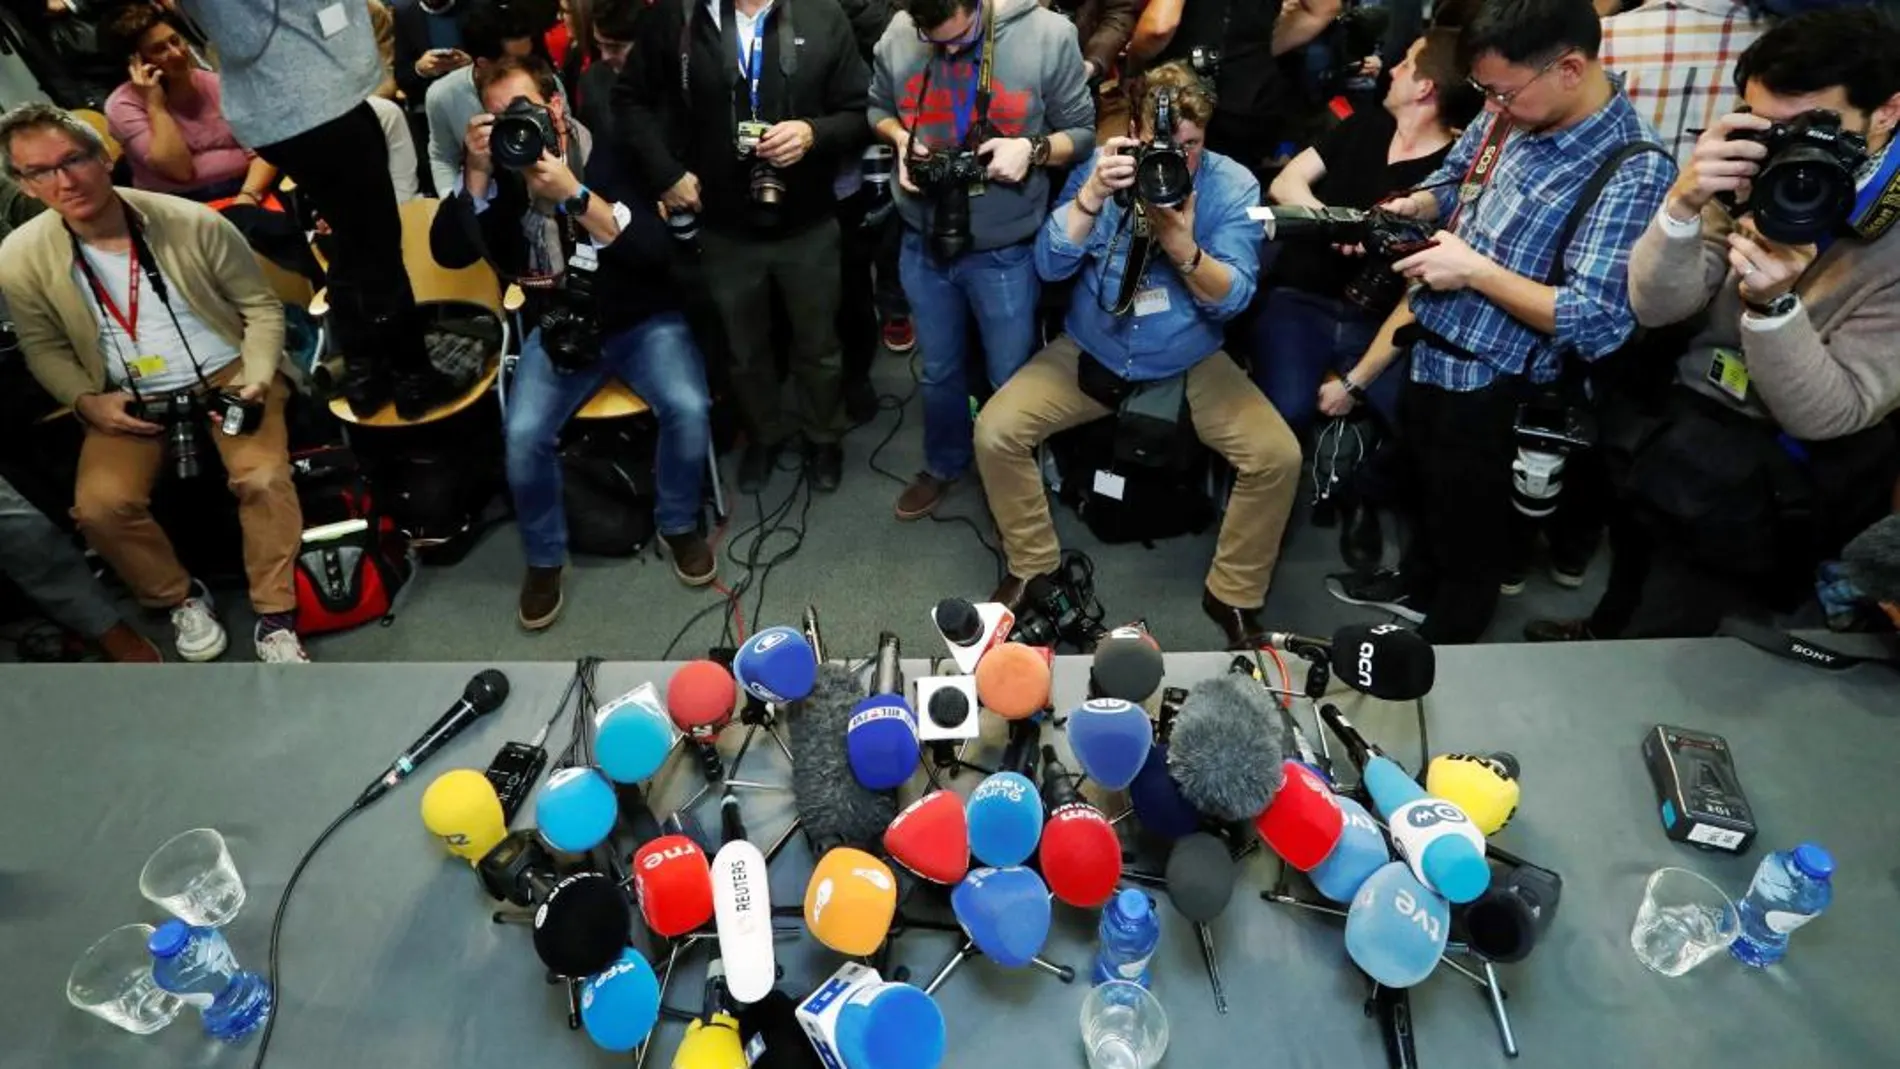 Decenas de reporteros esperan el comienzo de una rueda de prensa en el Press Club Europe de Bruselas